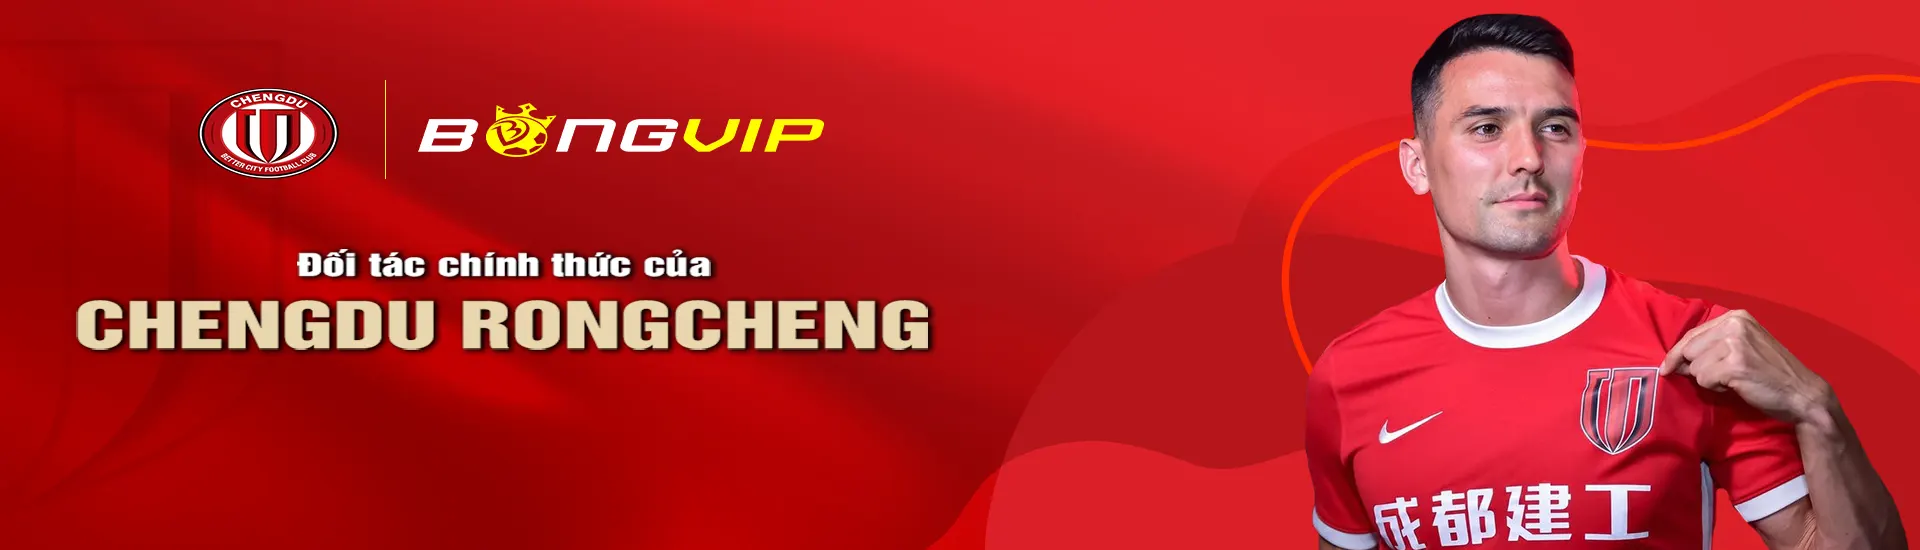 Bongvip đối tác chính thức của CHENGDU RONGCHENG